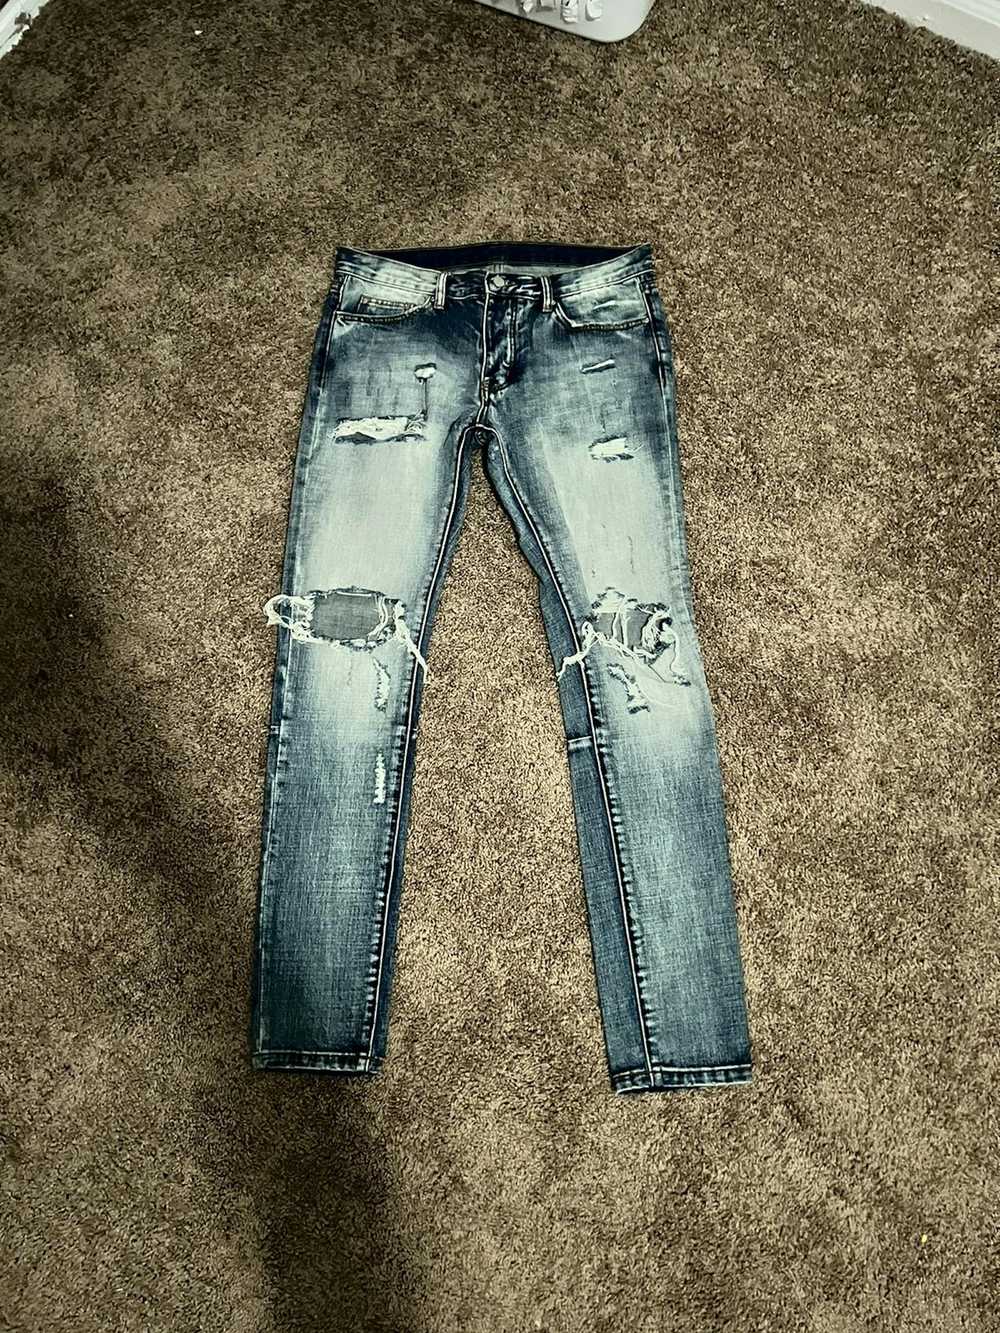 MNML MNML jeans - image 1